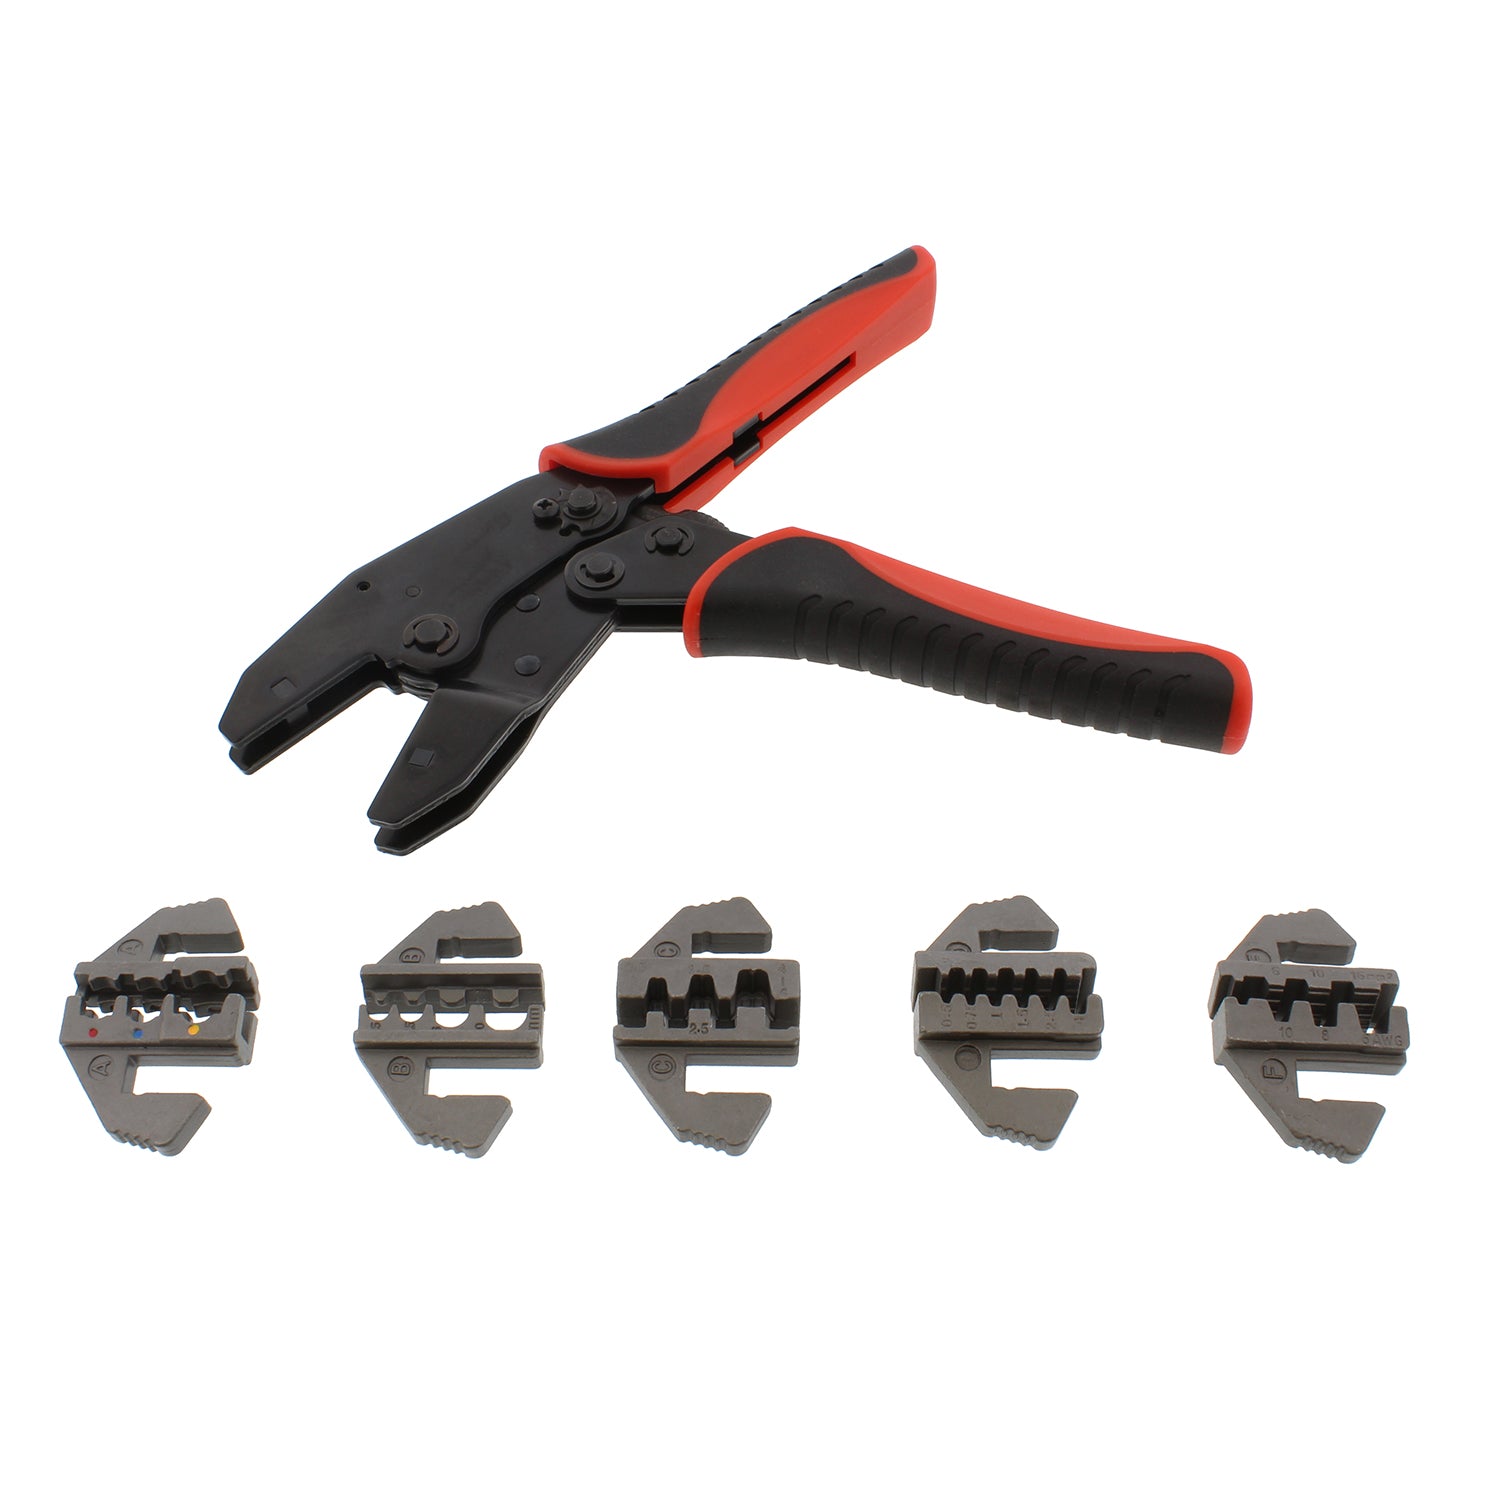 Quick-Change Ratchet Crimper Pliers & Die 6pc Crimping Tool Kit Set